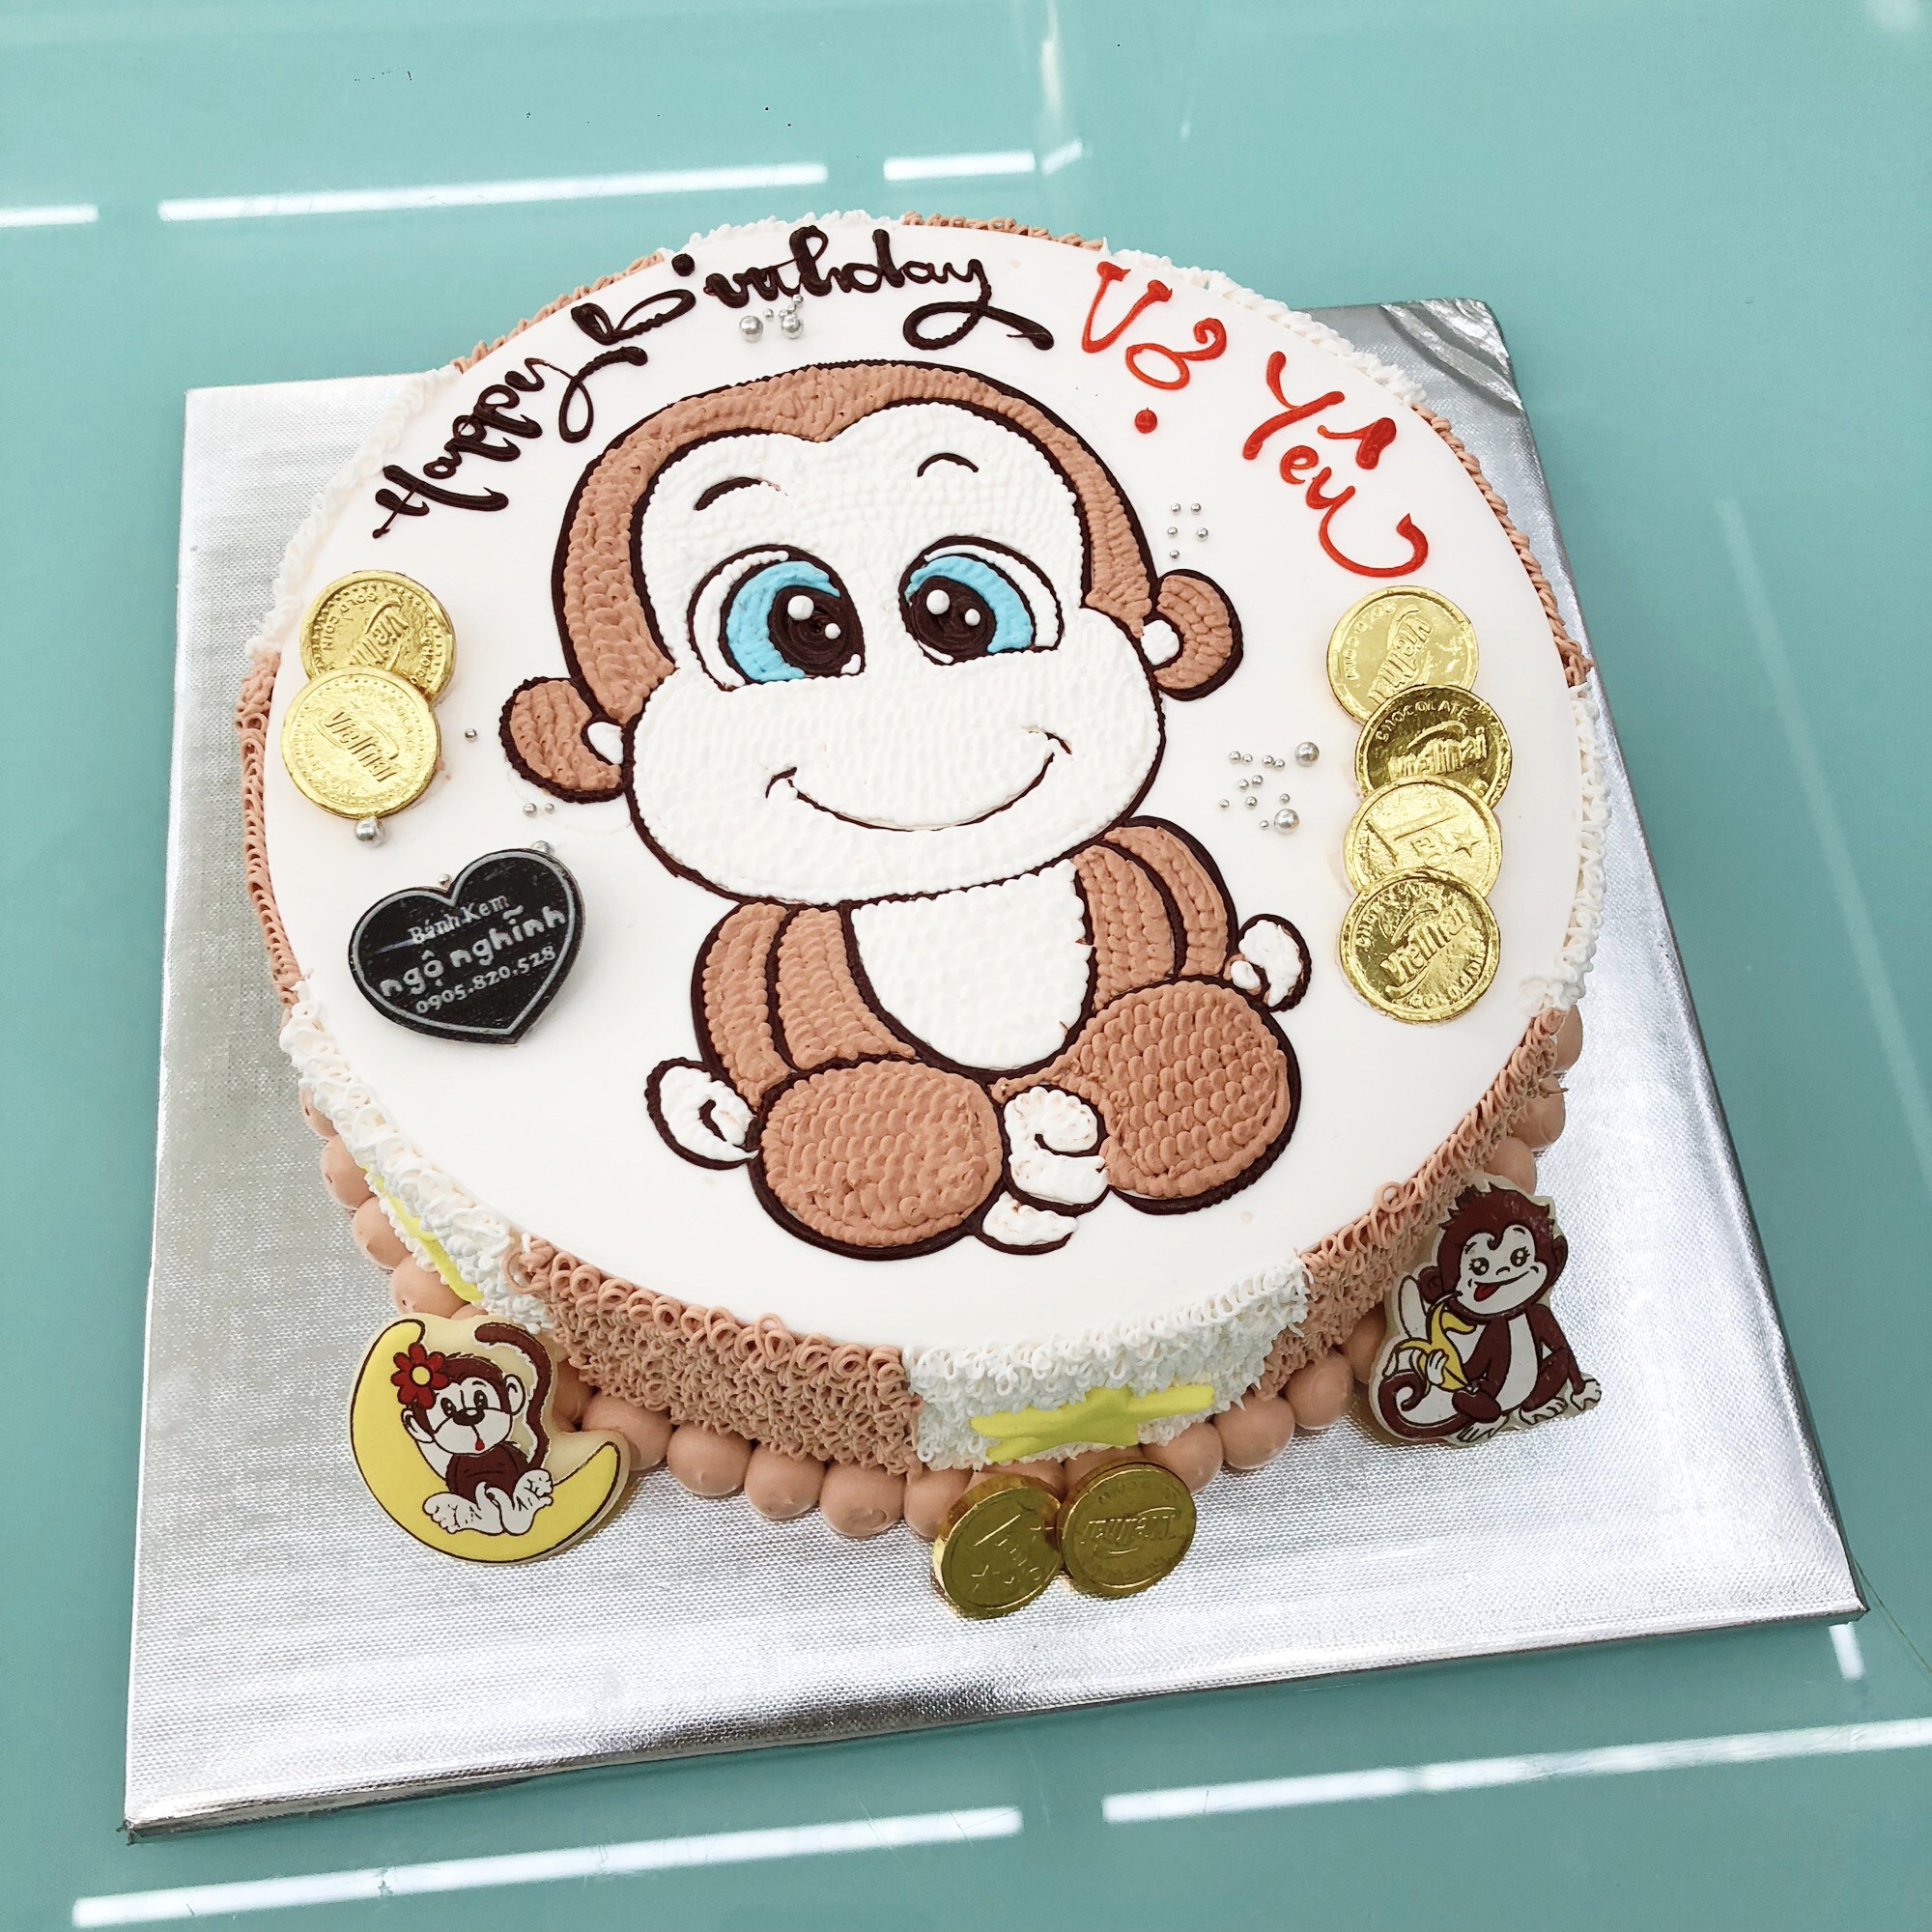 Bánh vẽ con khỉ: Bạn muốn mang đến cho con mình một chiếc bánh sinh nhật với hình ảnh đáng yêu, tuy nhiên không muốn sử dụng bánh làm bằng kẹo hay bột mì thông thường? Hãy xem ngay hình ảnh chiếc bánh vẽ con khỉ tại đây! Với cách trang trí bánh rất độc đáo và tinh tế, chiếc bánh này có thể khiến cho một người nghiện đồ ngọt cũng phải thầm thốt \